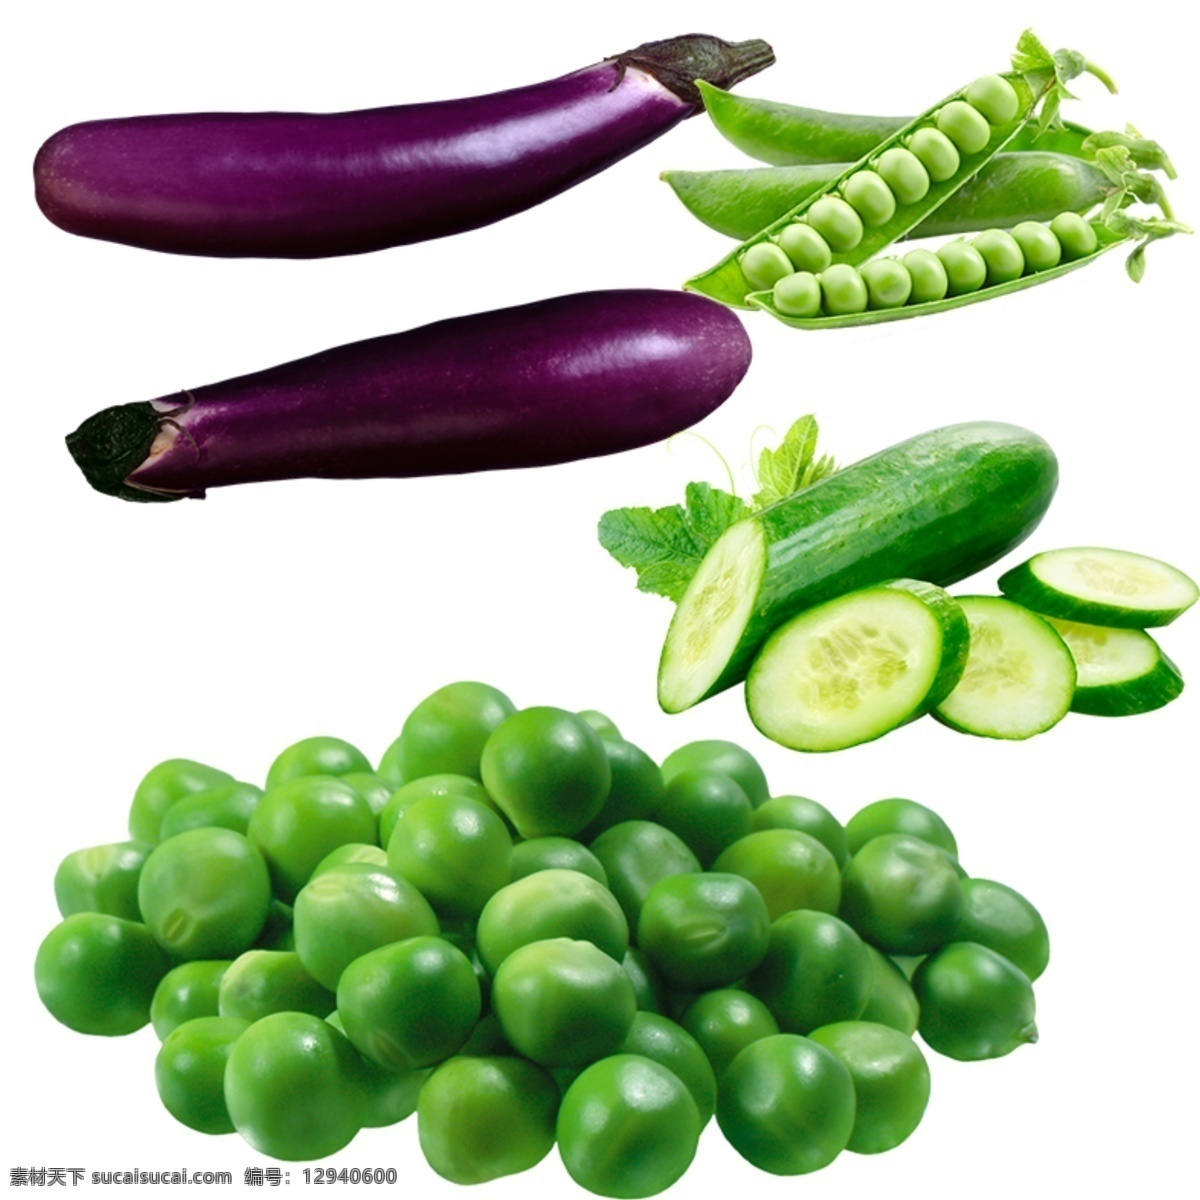 蔬菜图片 蔬菜 菜 茄子 青豆 黄瓜 青豆仁 蔬菜画面